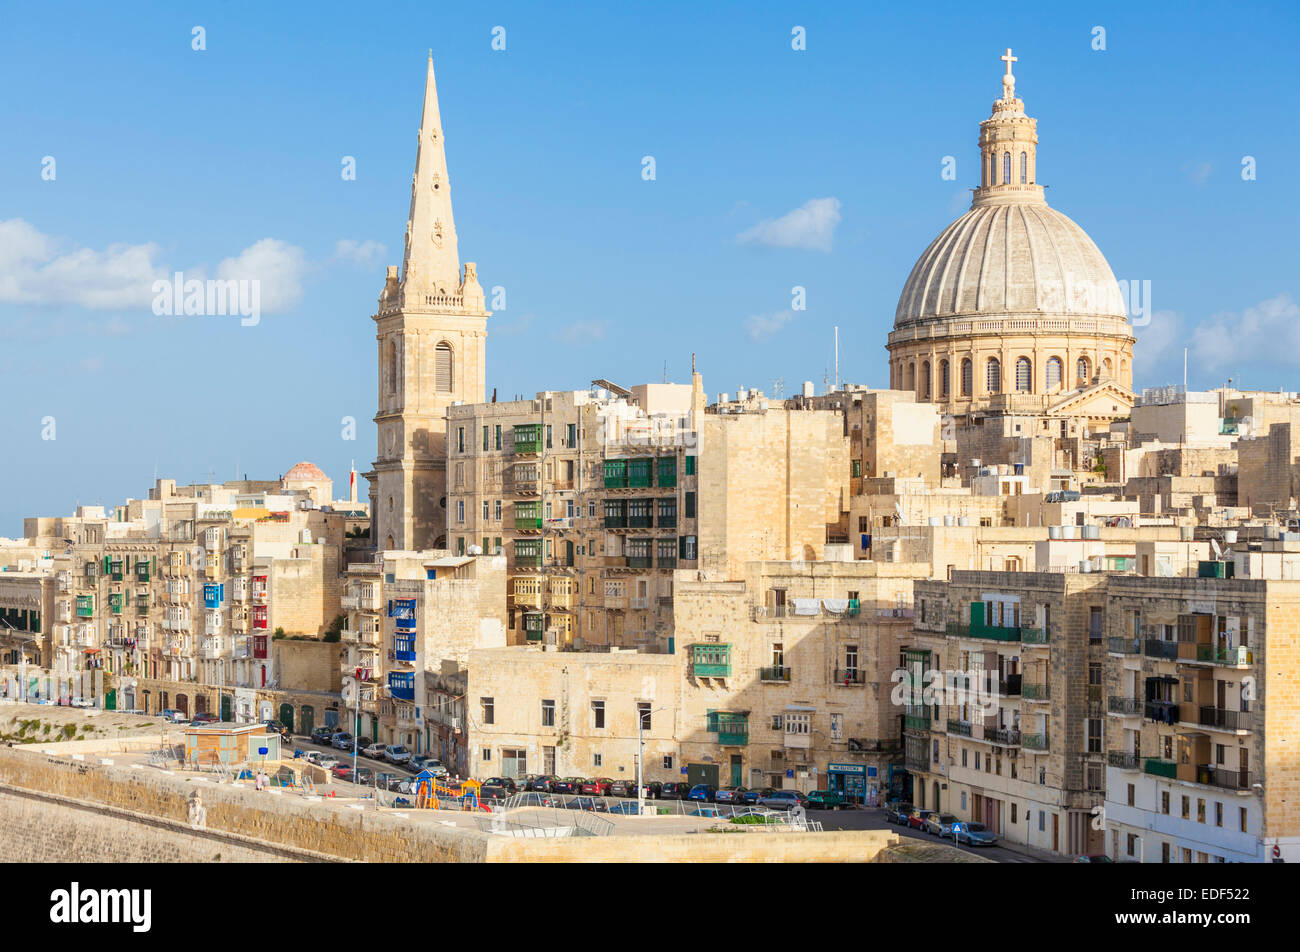 Toits de la valette avec le dôme de l'église des Carmes et St Pauls Cathédrale anglicane La Valette Malte eu Europe Banque D'Images